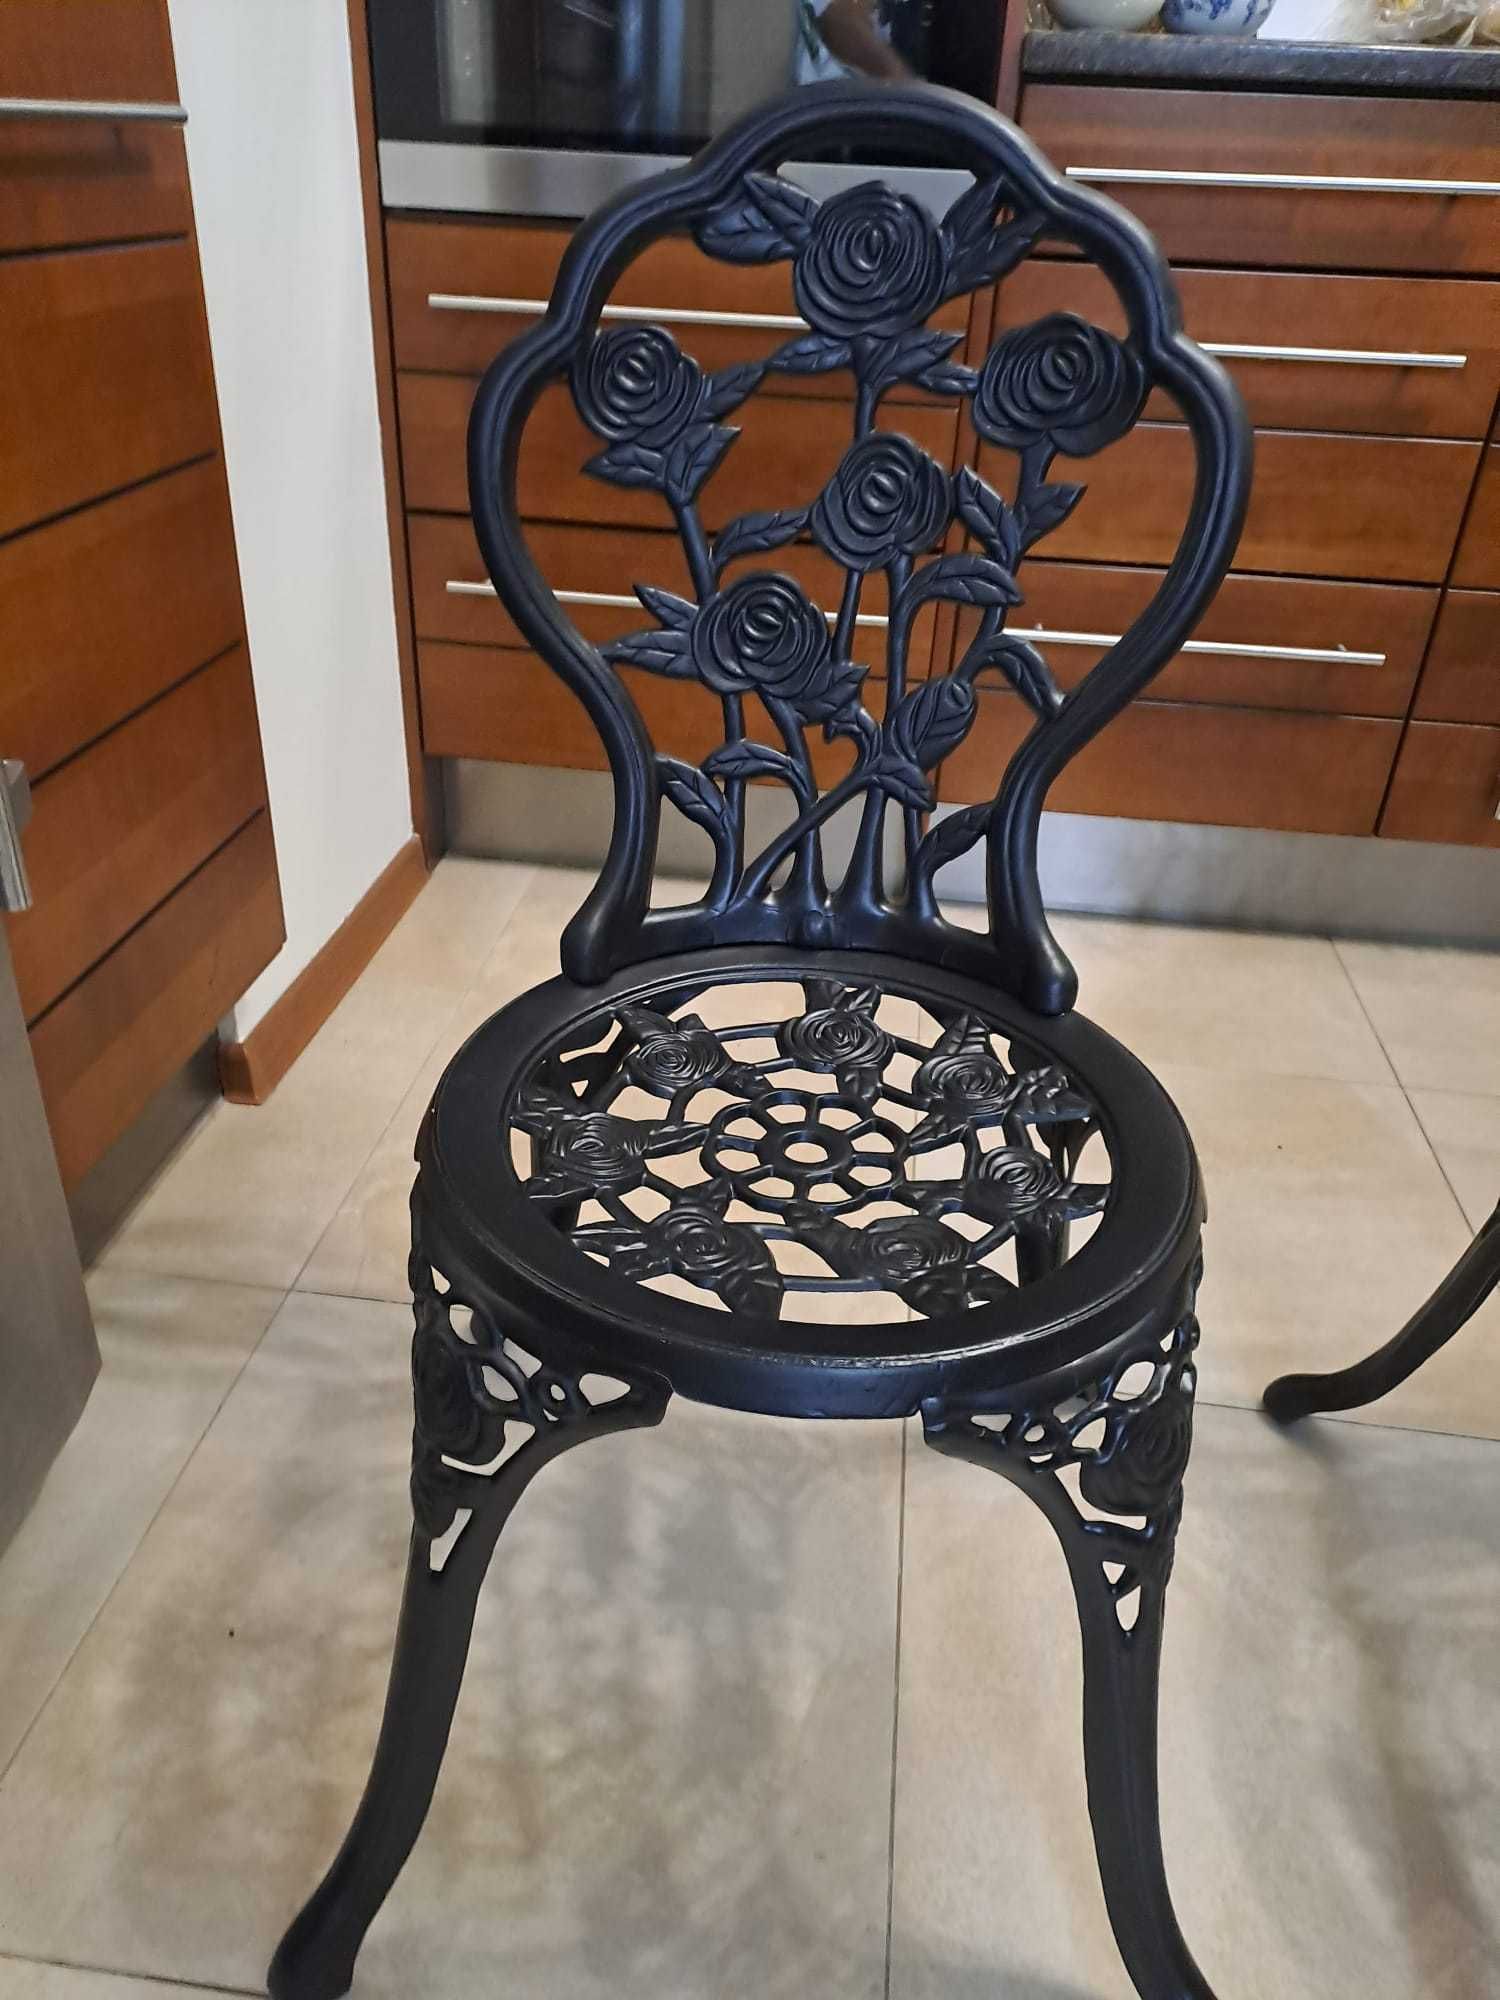 Zestaw ogrodowy stół i 2 krzesła komplet metalowe na taras